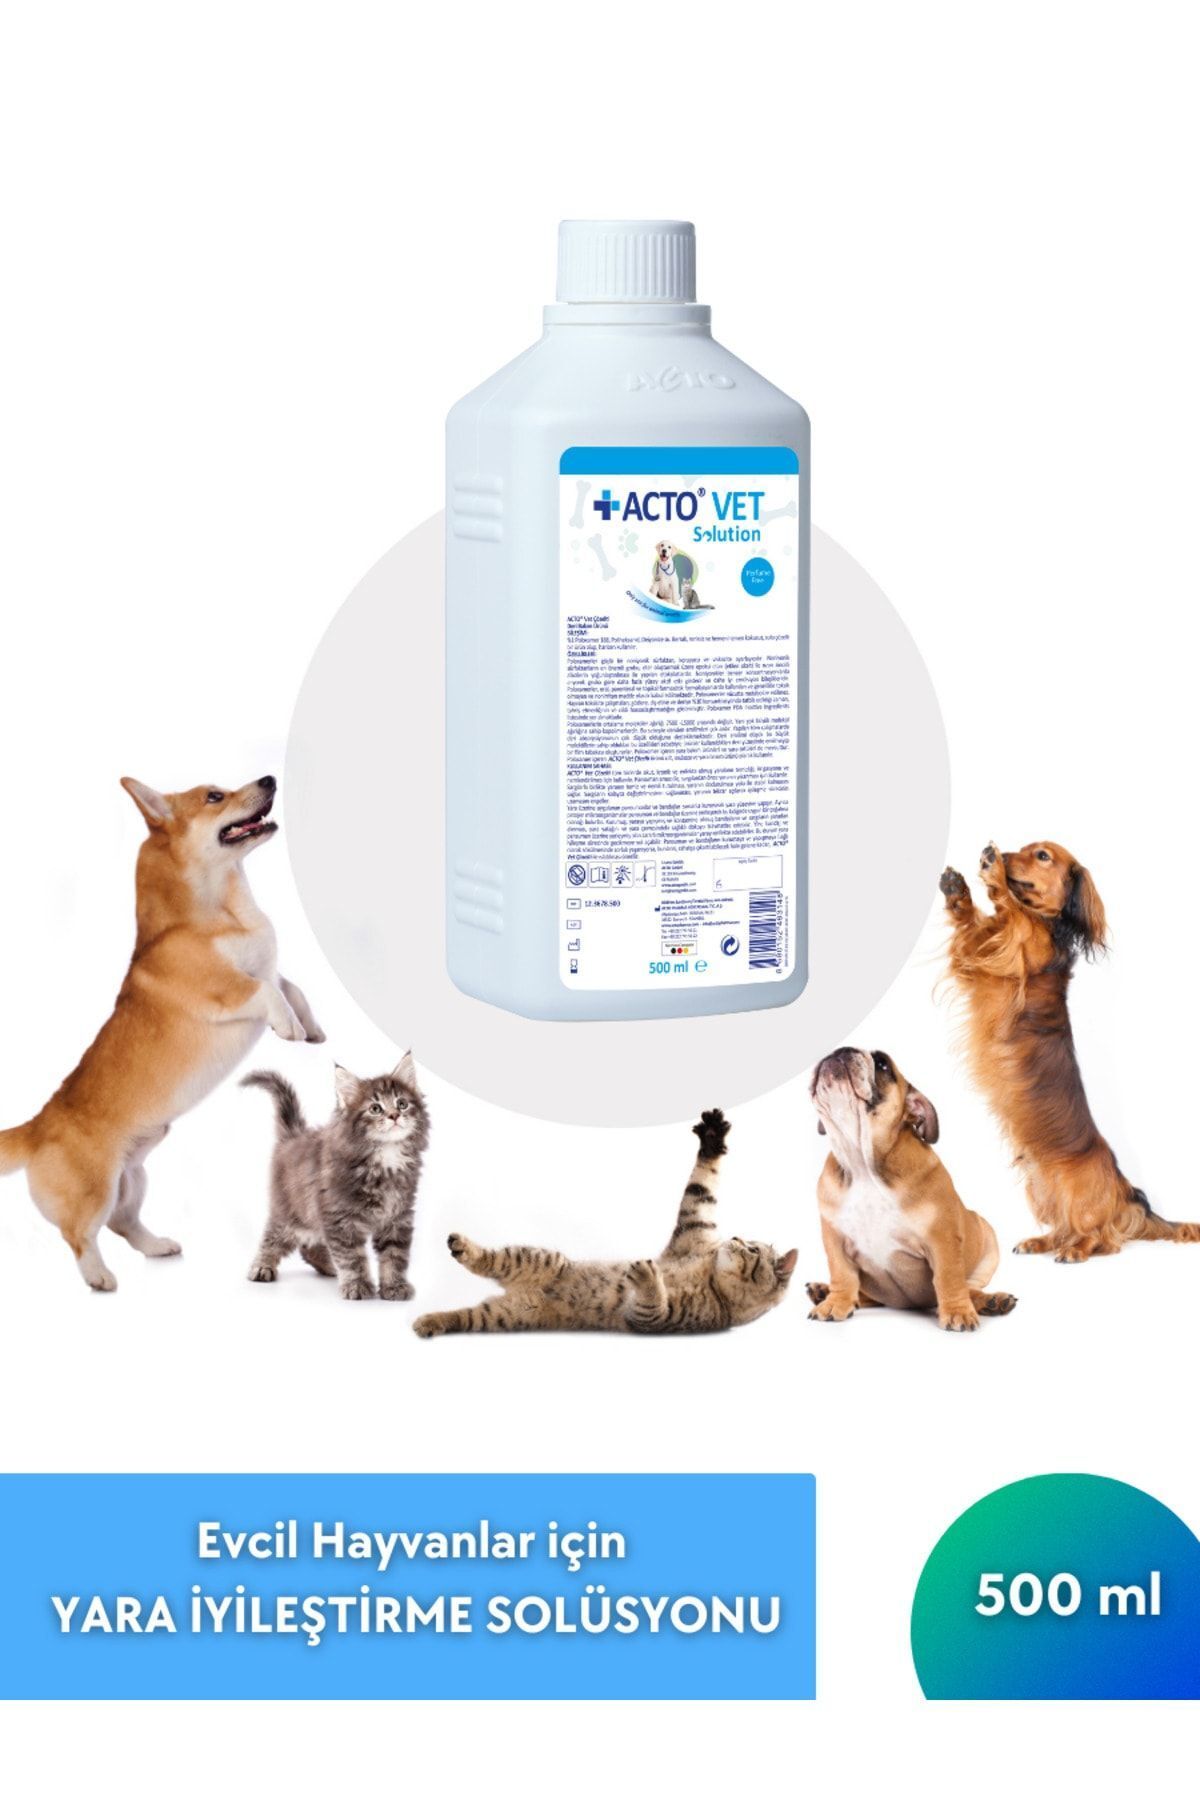 Acto ® VET SOLUTION 500 ML | Evcil Hayvanlar için Yara İyileştirme Solüsyonu